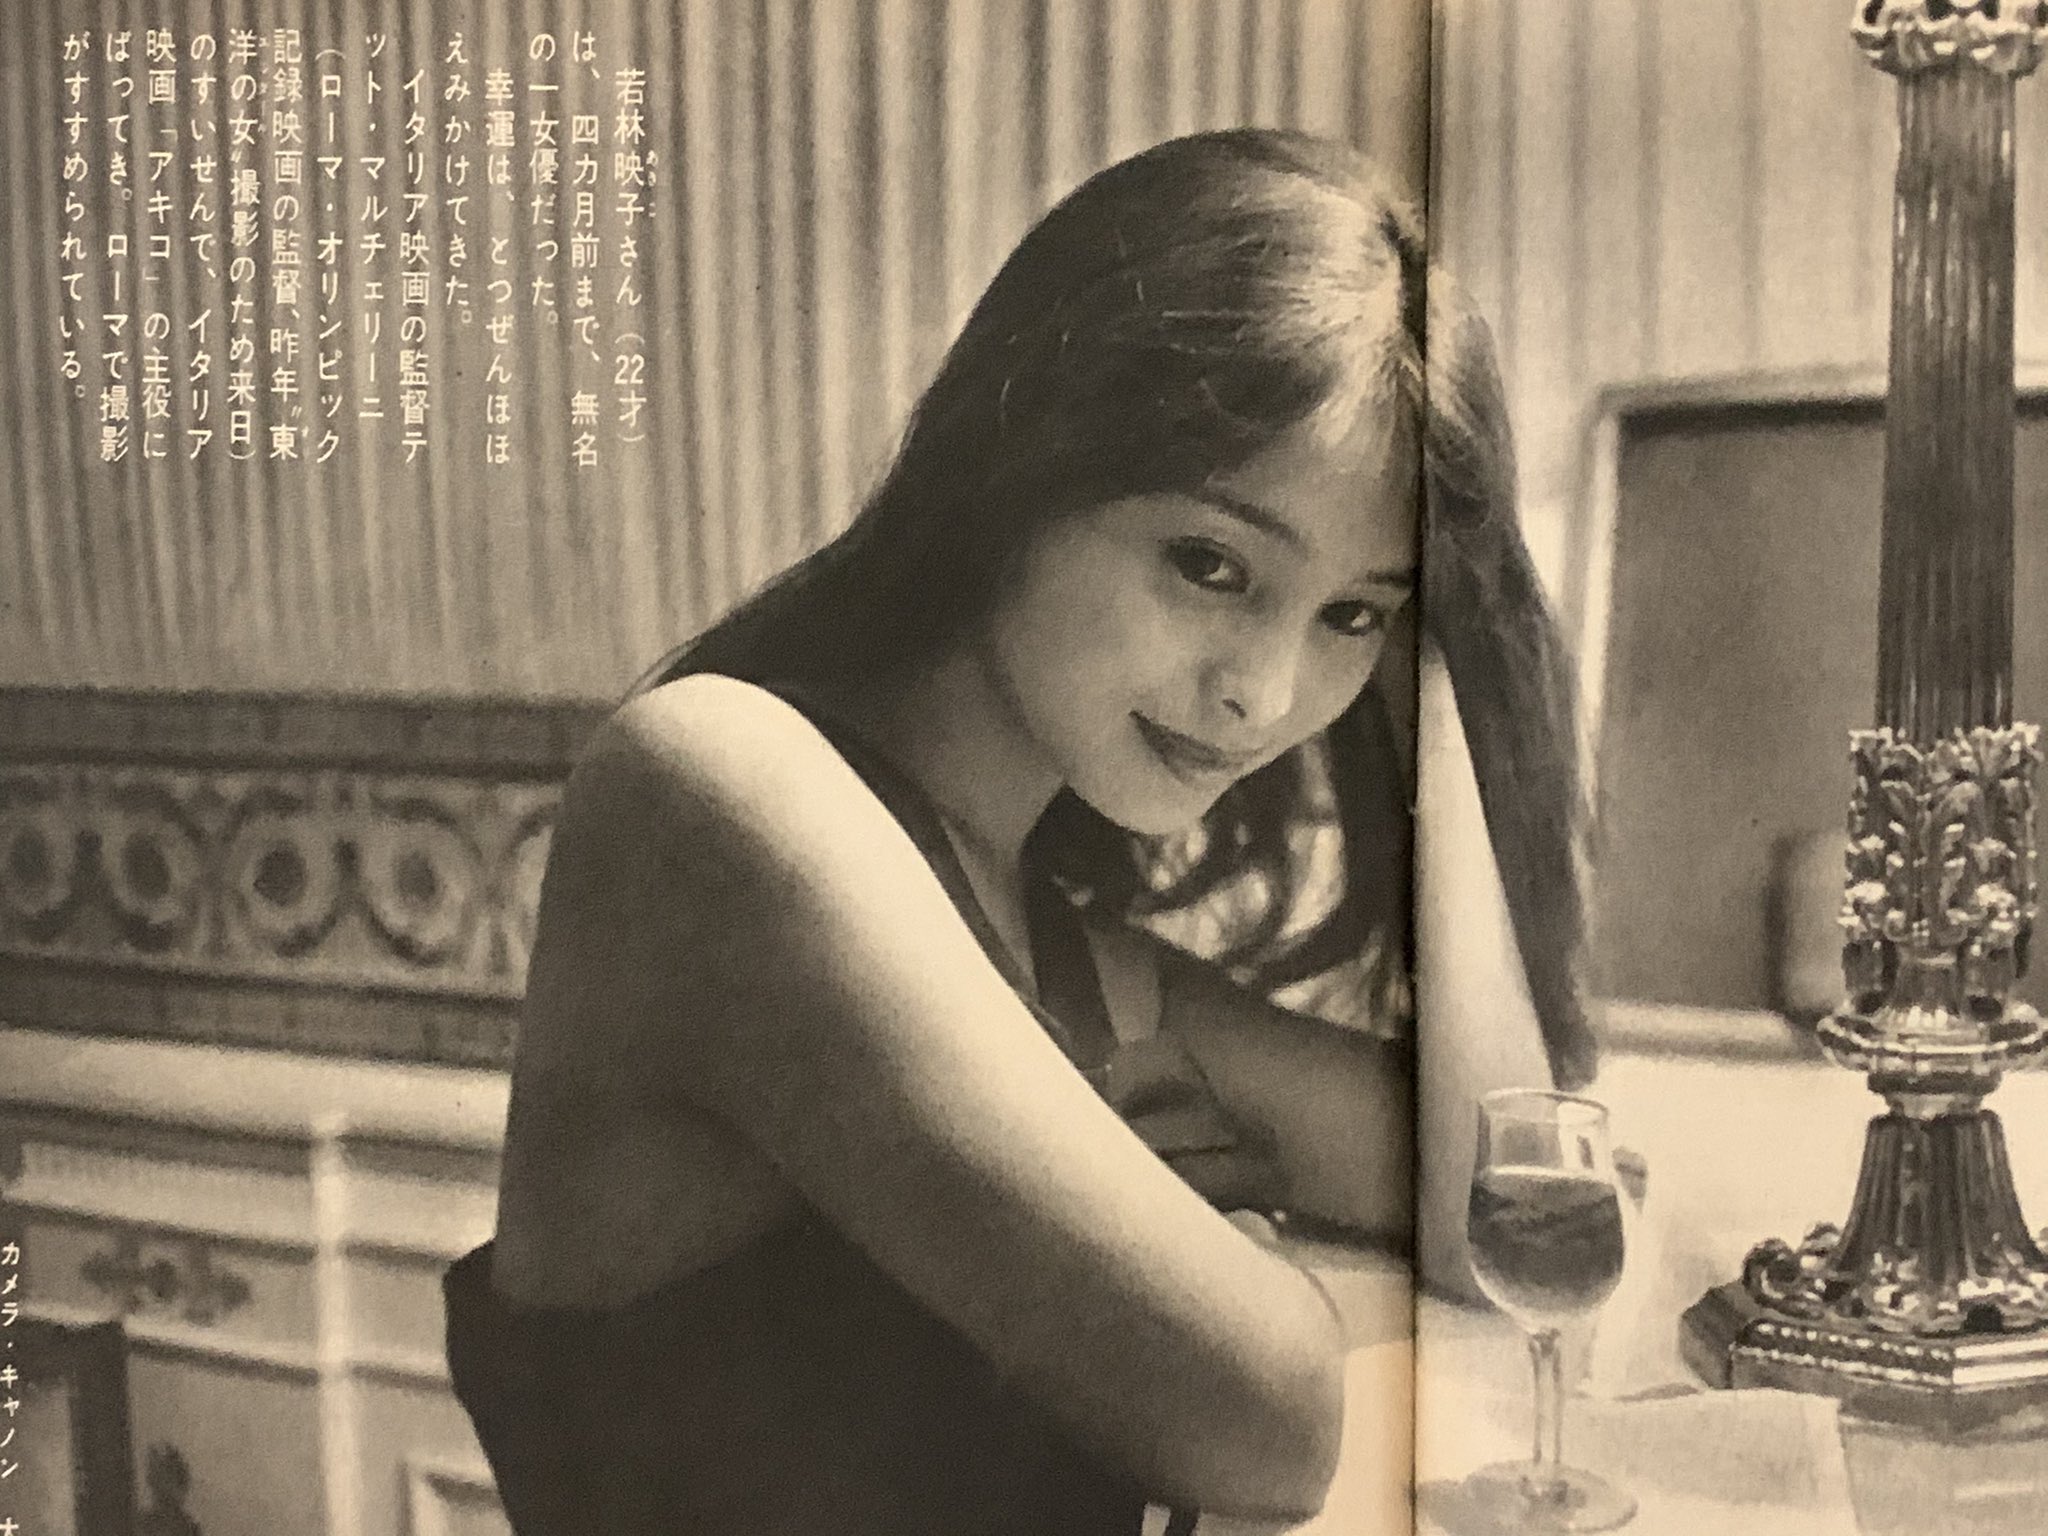 そらいろの樹 V Twitter 若林映子 あきこ さん 1960年 S35年 に こんなキレイな女優さんがいたのですね 現在81歳 このグラビア 時を超えてます